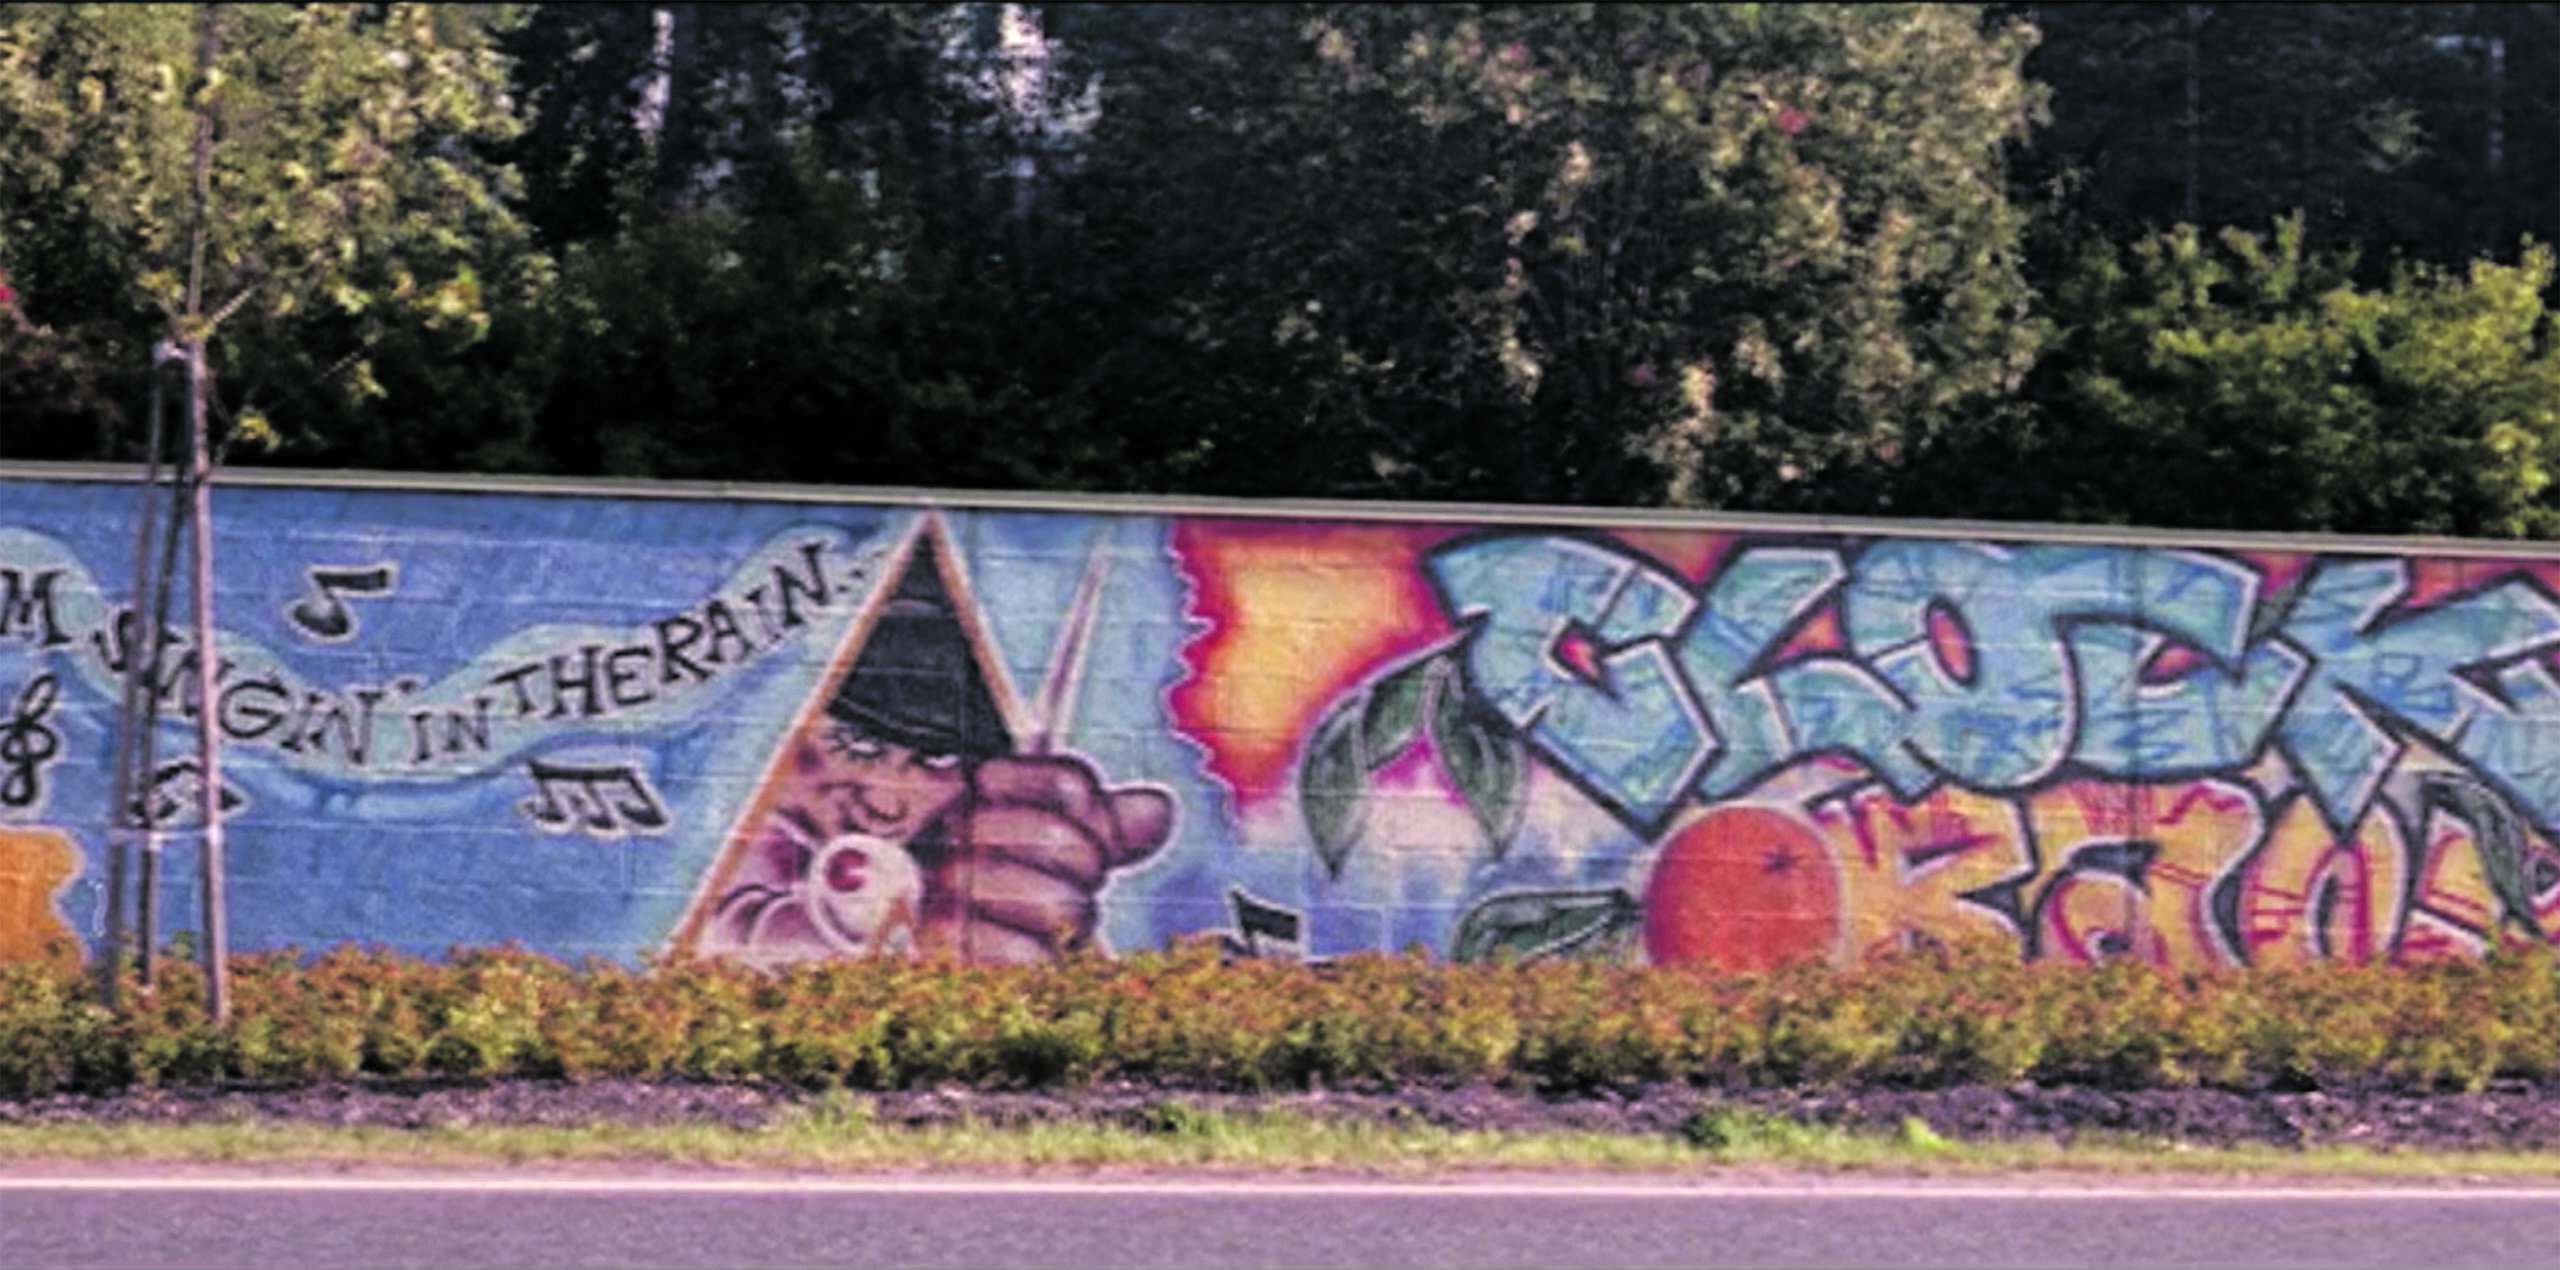 Pala historiaa. Itäväylän melumuuriin Kulosaaren kohdalle vuonna 1991 maalatut luvalliset graffitit olivat ensimmäisen graffitibuumin merkittävin symboli. Helsingin kaupungin valittua nollatoleranssilinjan ja käynnistettyä Stop töhryille -hankkeen vuonna 1998, kaupungin virkamiehet määräsivät muurin maalattavaksi valkoiseksi. Likaisen harmaa muuri on Stop töhryille -hankkeen monumentti, jossa näkyy edelleen vanhojen teosten ääriviivoja. Se on elävä muistomerkki politiikasta, jonka ei toivota palaavan. 